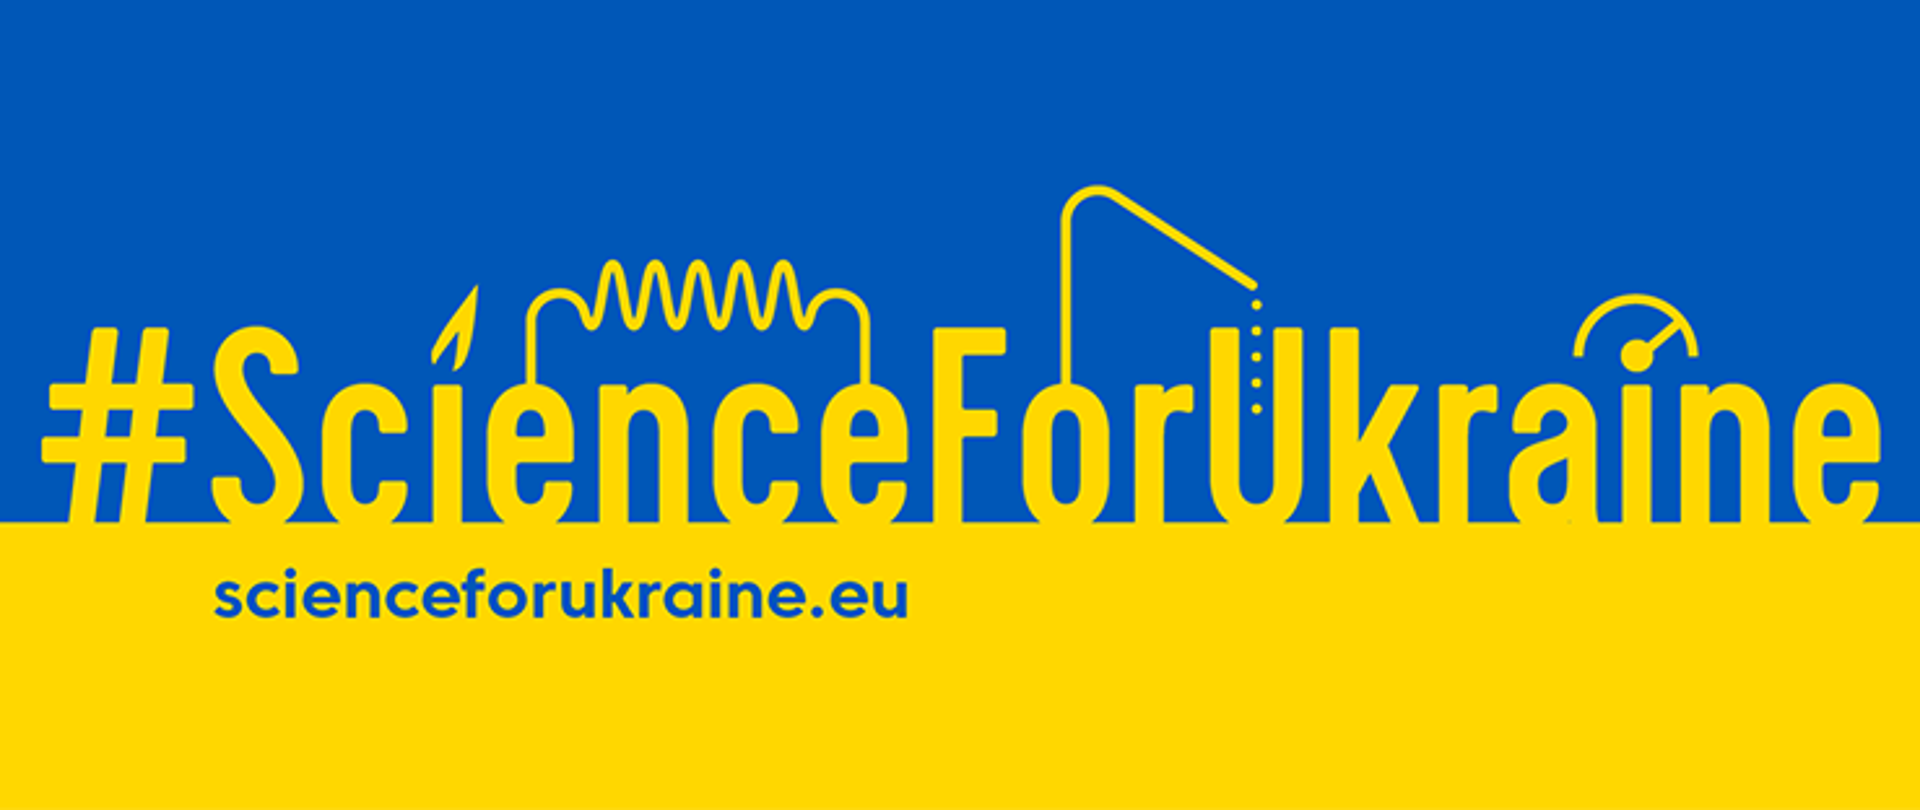 zdjęcie przedstawia logo w kolorach flagi Ukrainy: niebiesko- żółtym z napisem na niebieskiej części tła, czcionką w kolorze żółtym: #ScienceForUkraine. Na żółtej części tła niebieski napis: scienceforukraine.eu